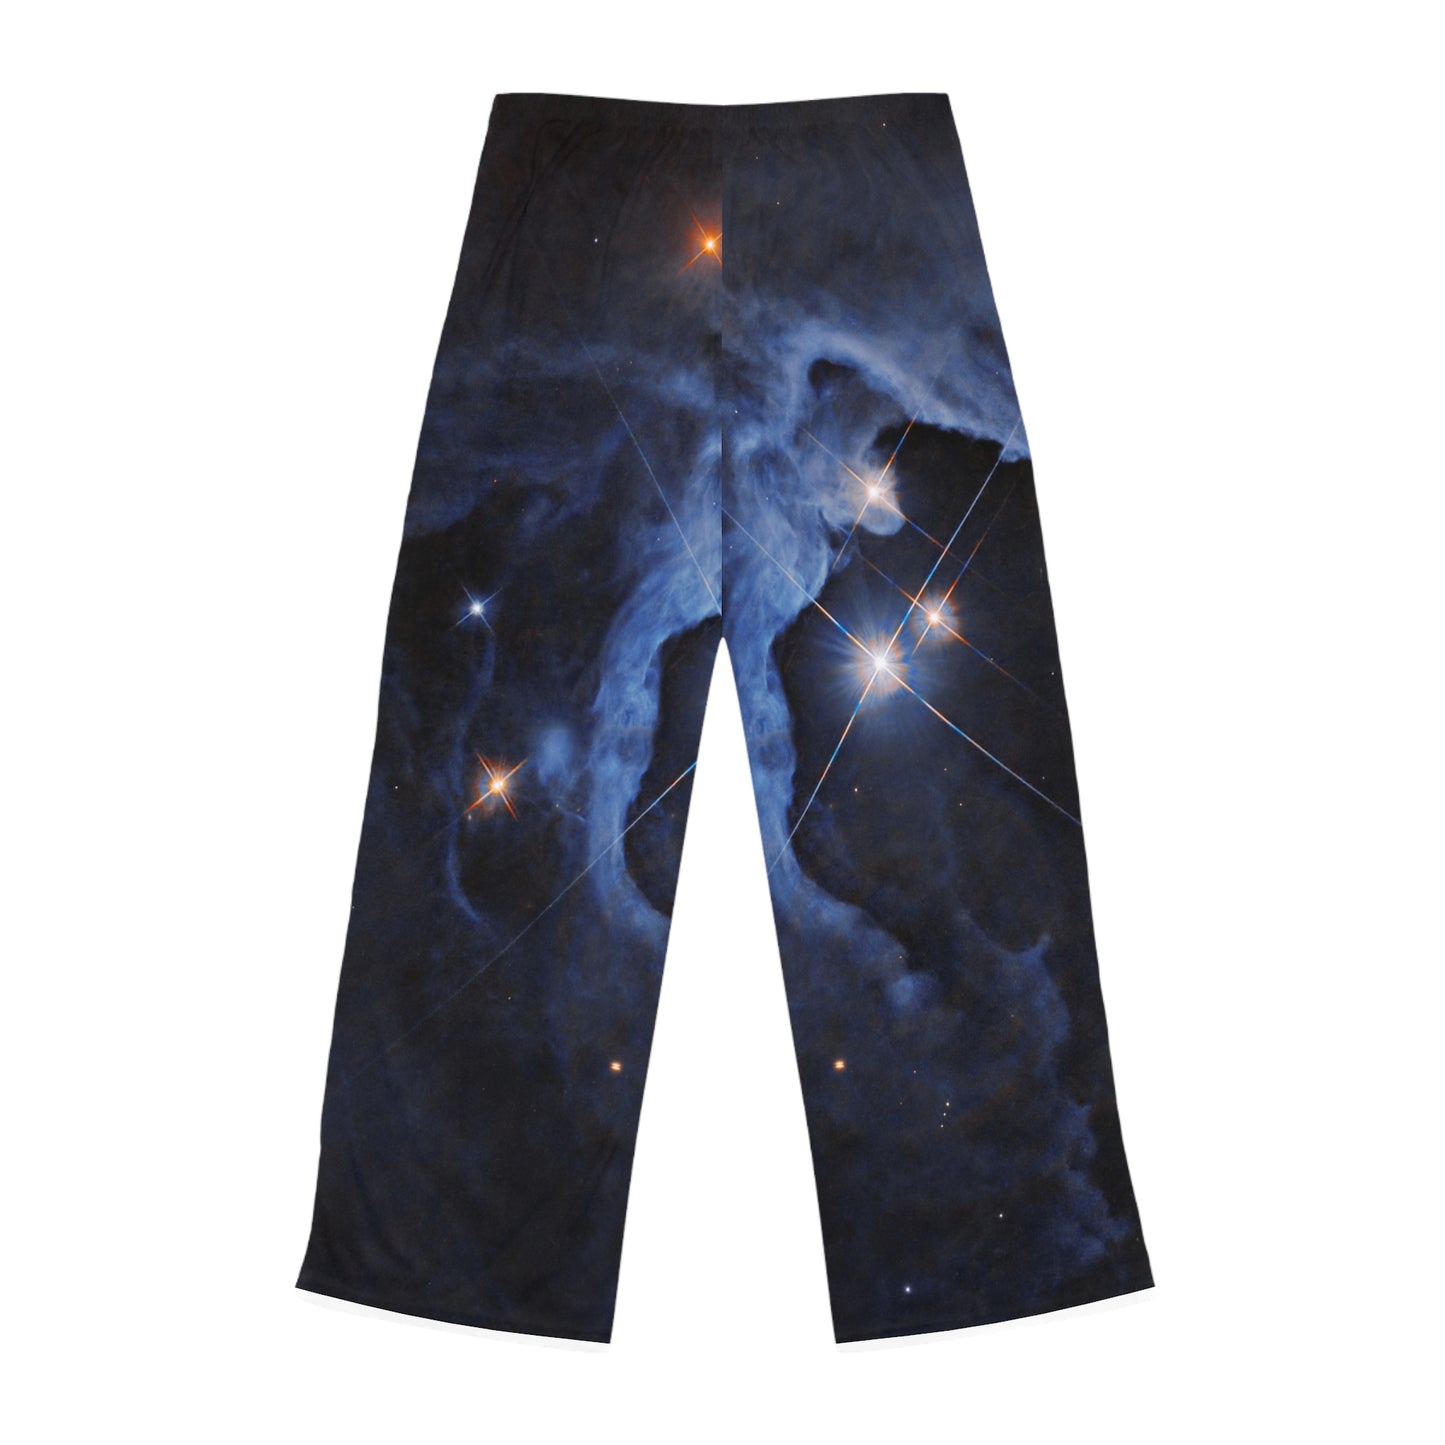 Systèmes HP Tau, HP Tau G2 et G3 3 étoiles capturés par Hubble - Pantalons de détente pour femmes